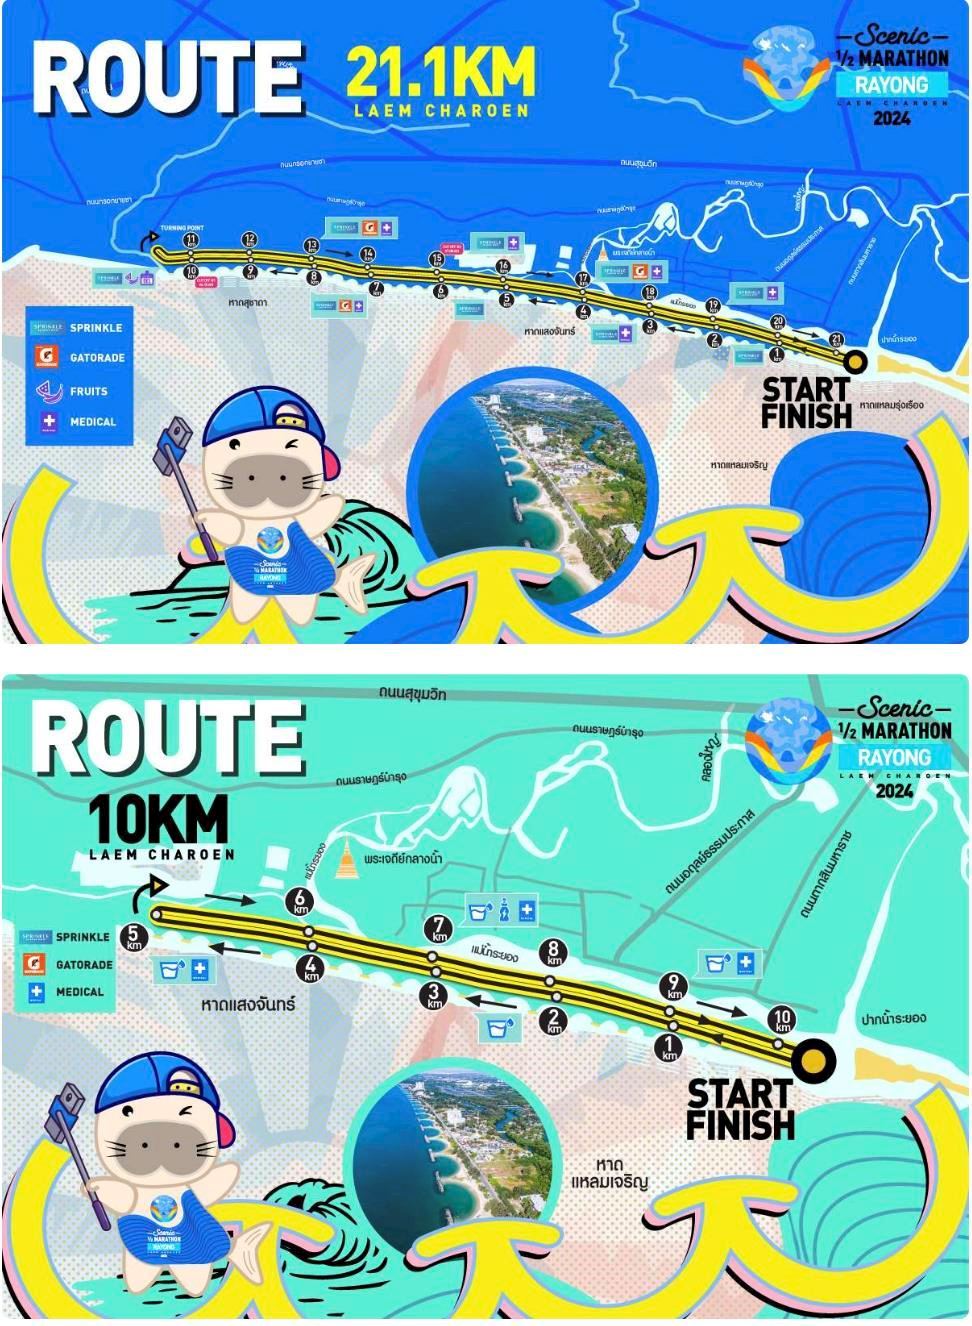 Scenic Half Marathon Rayong MAPA DEL RECORRIDO DE